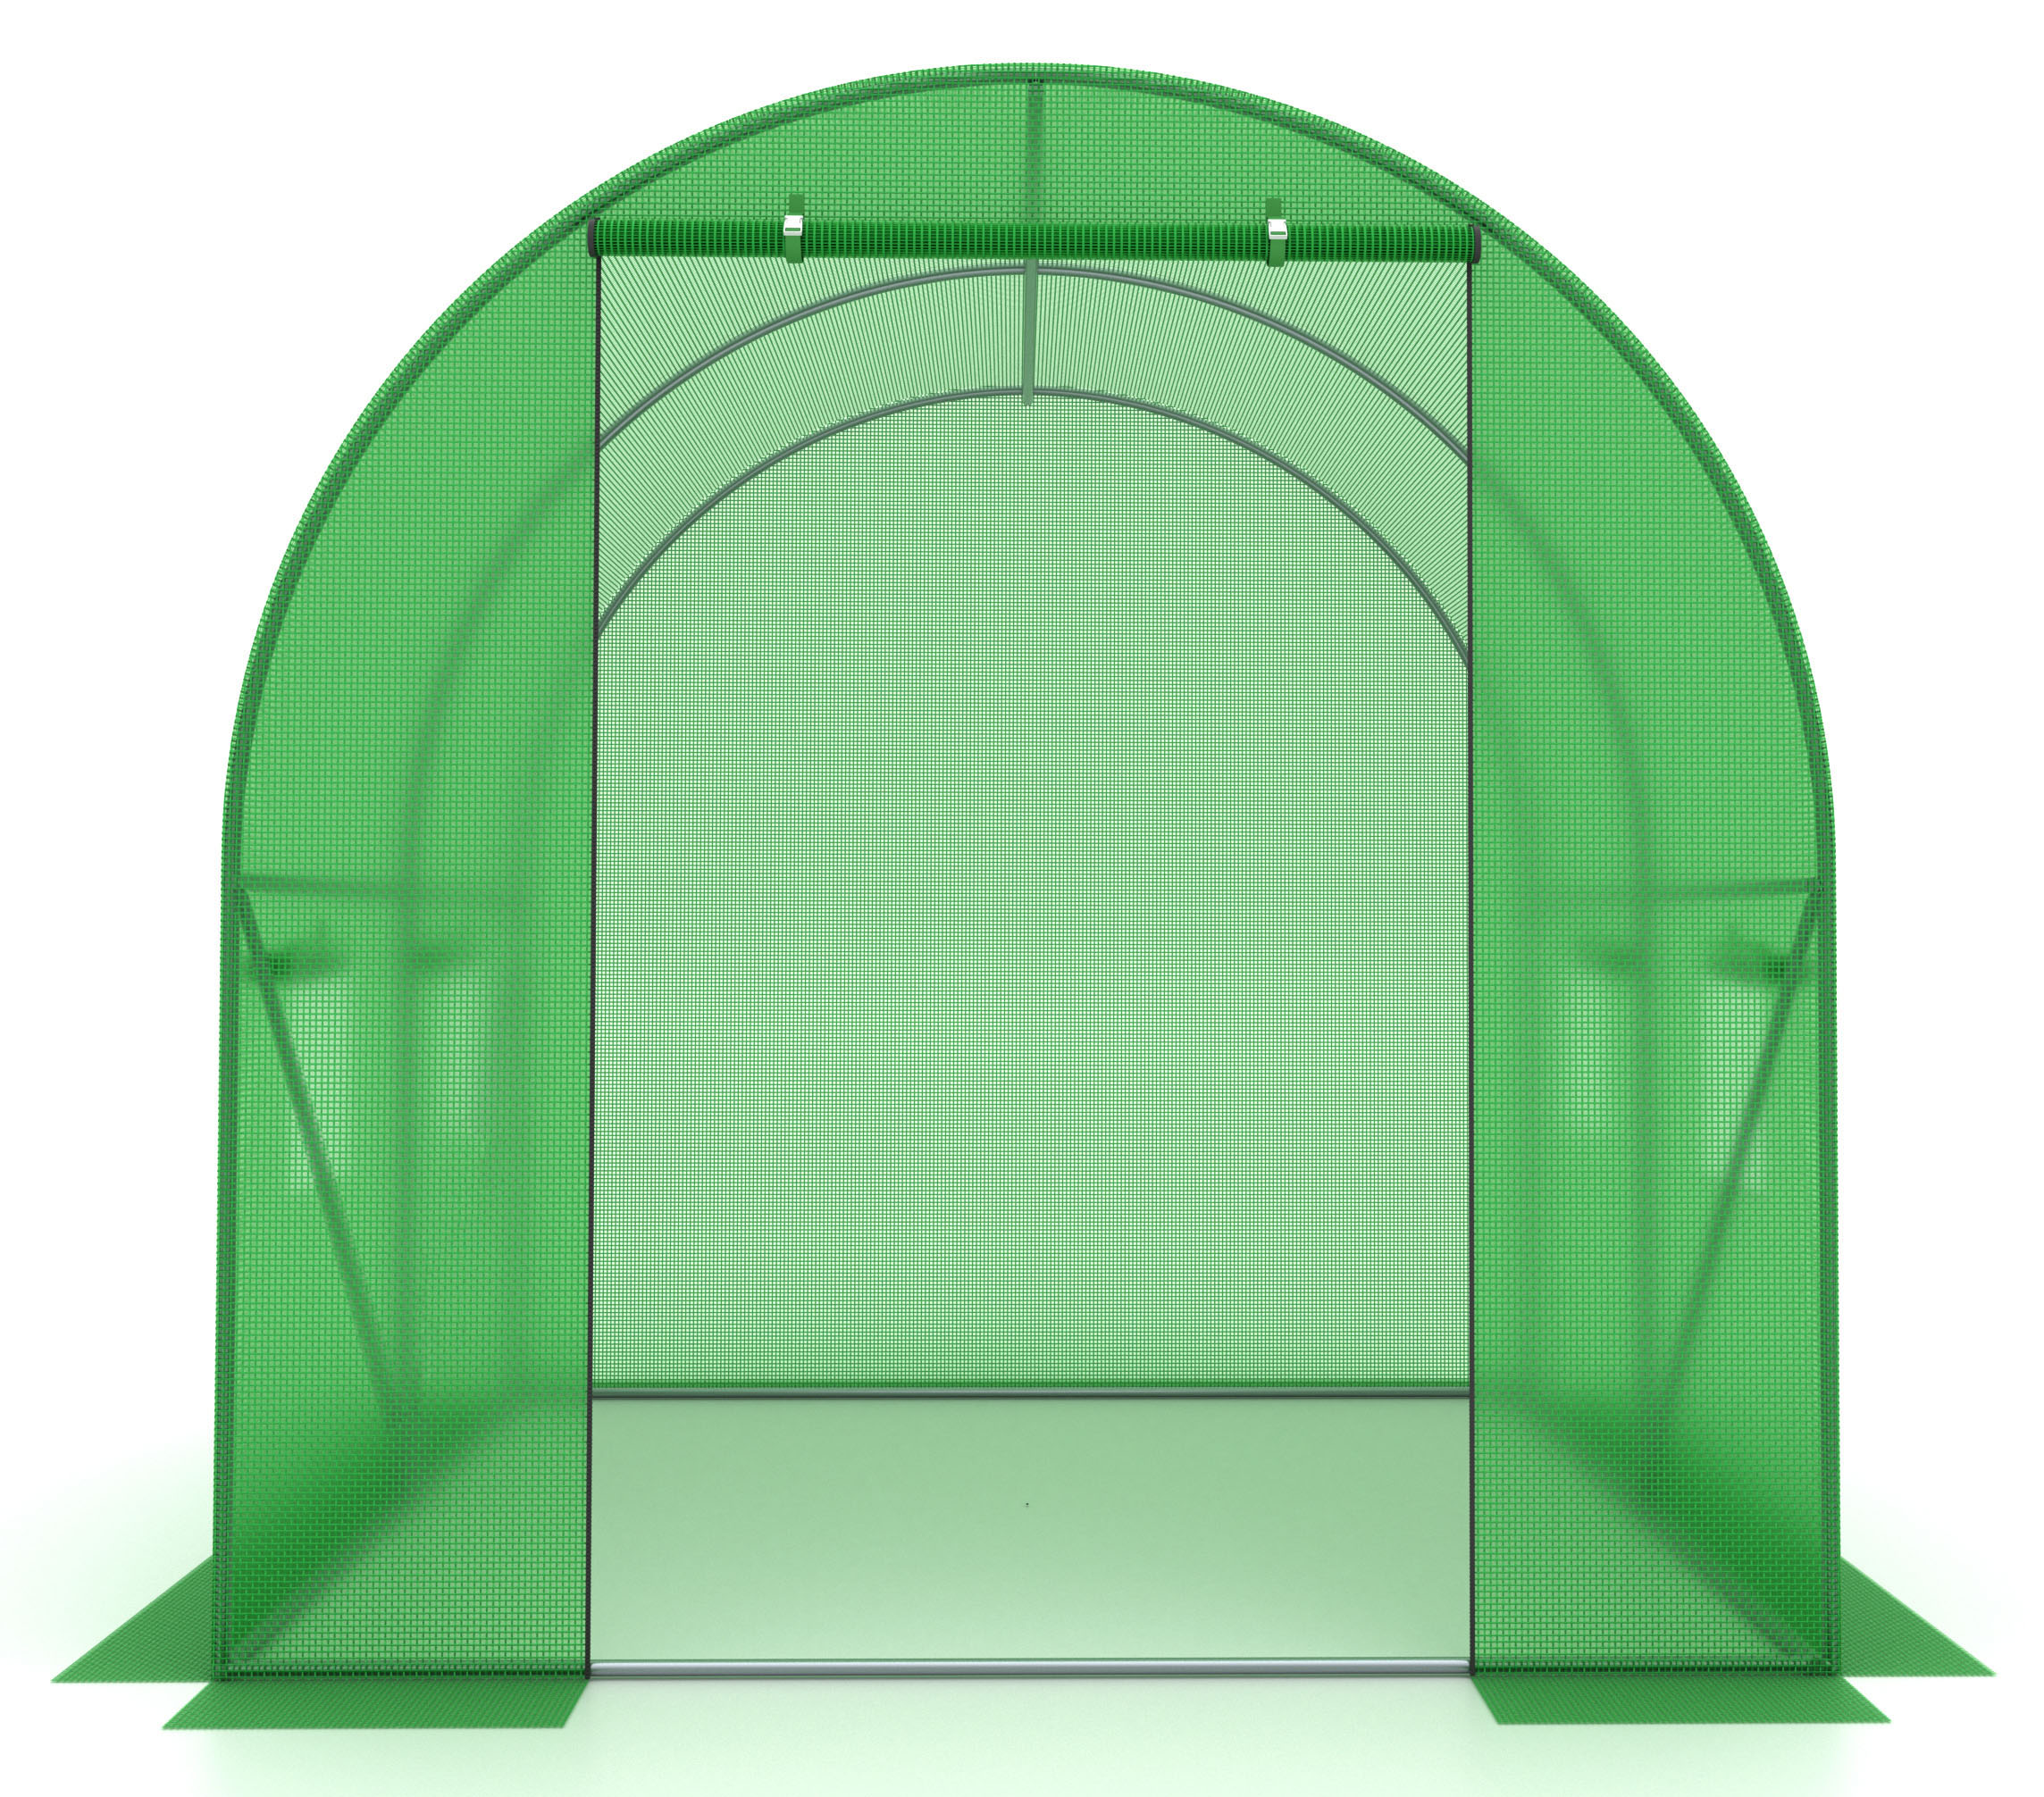 Ogrodowy tunel foliowy - szklarnia ogrodowa 2x2m